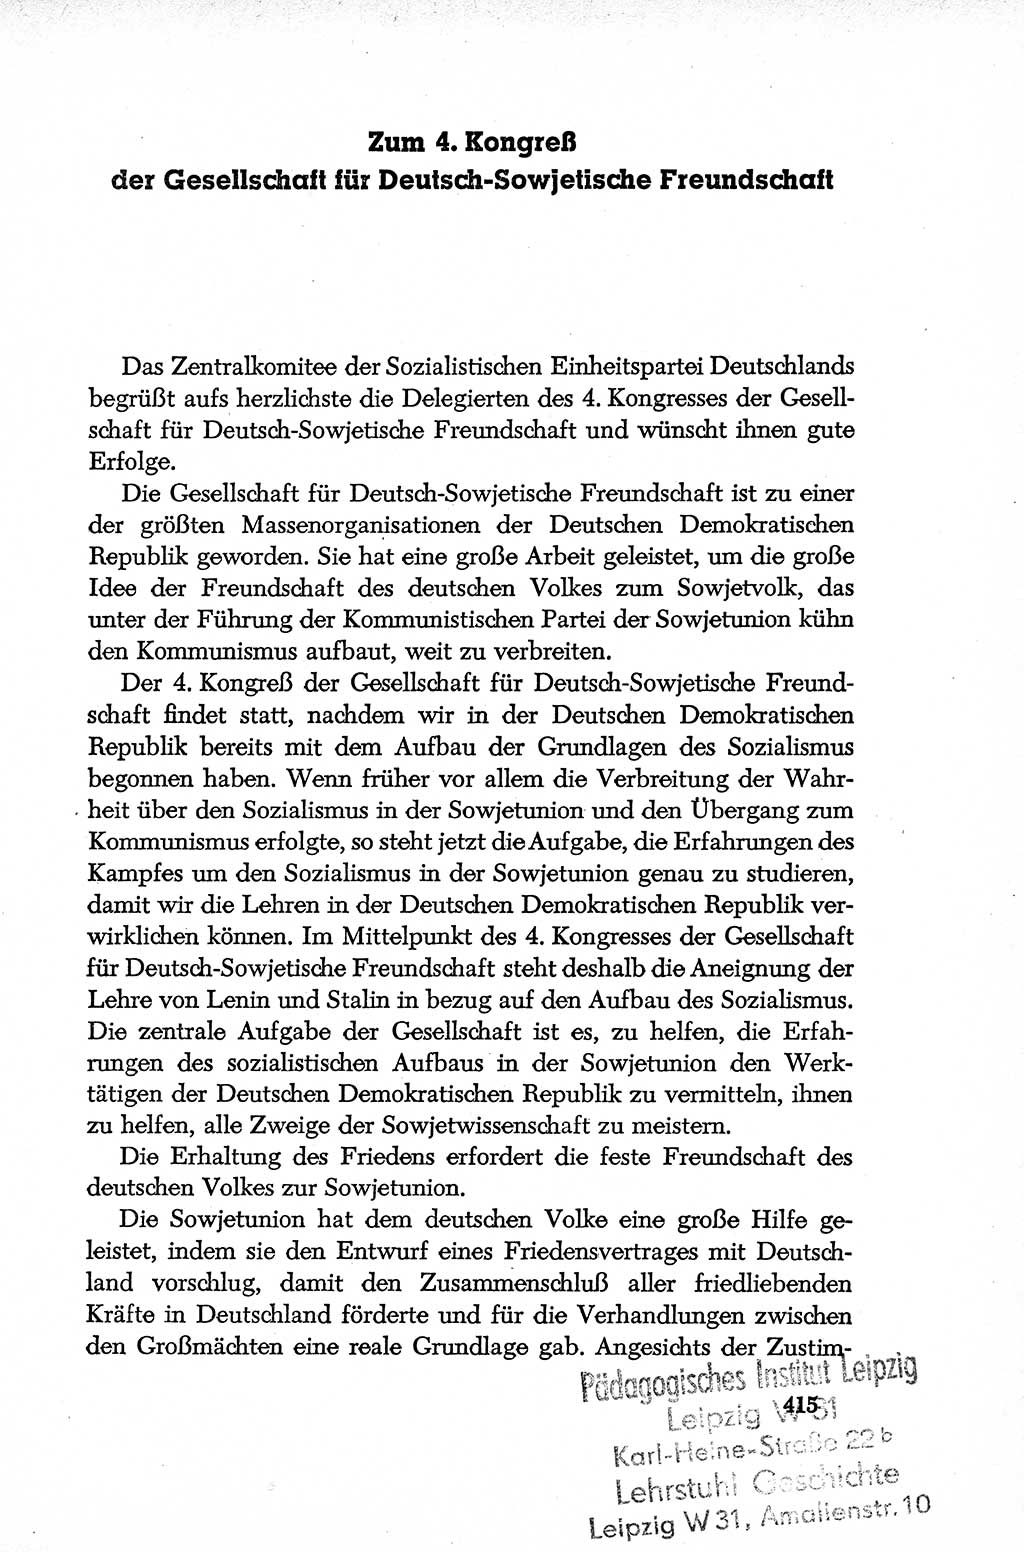 Dokumente der Sozialistischen Einheitspartei Deutschlands (SED) [Deutsche Demokratische Republik (DDR)] 1952-1953, Seite 415 (Dok. SED DDR 1952-1953, S. 415)